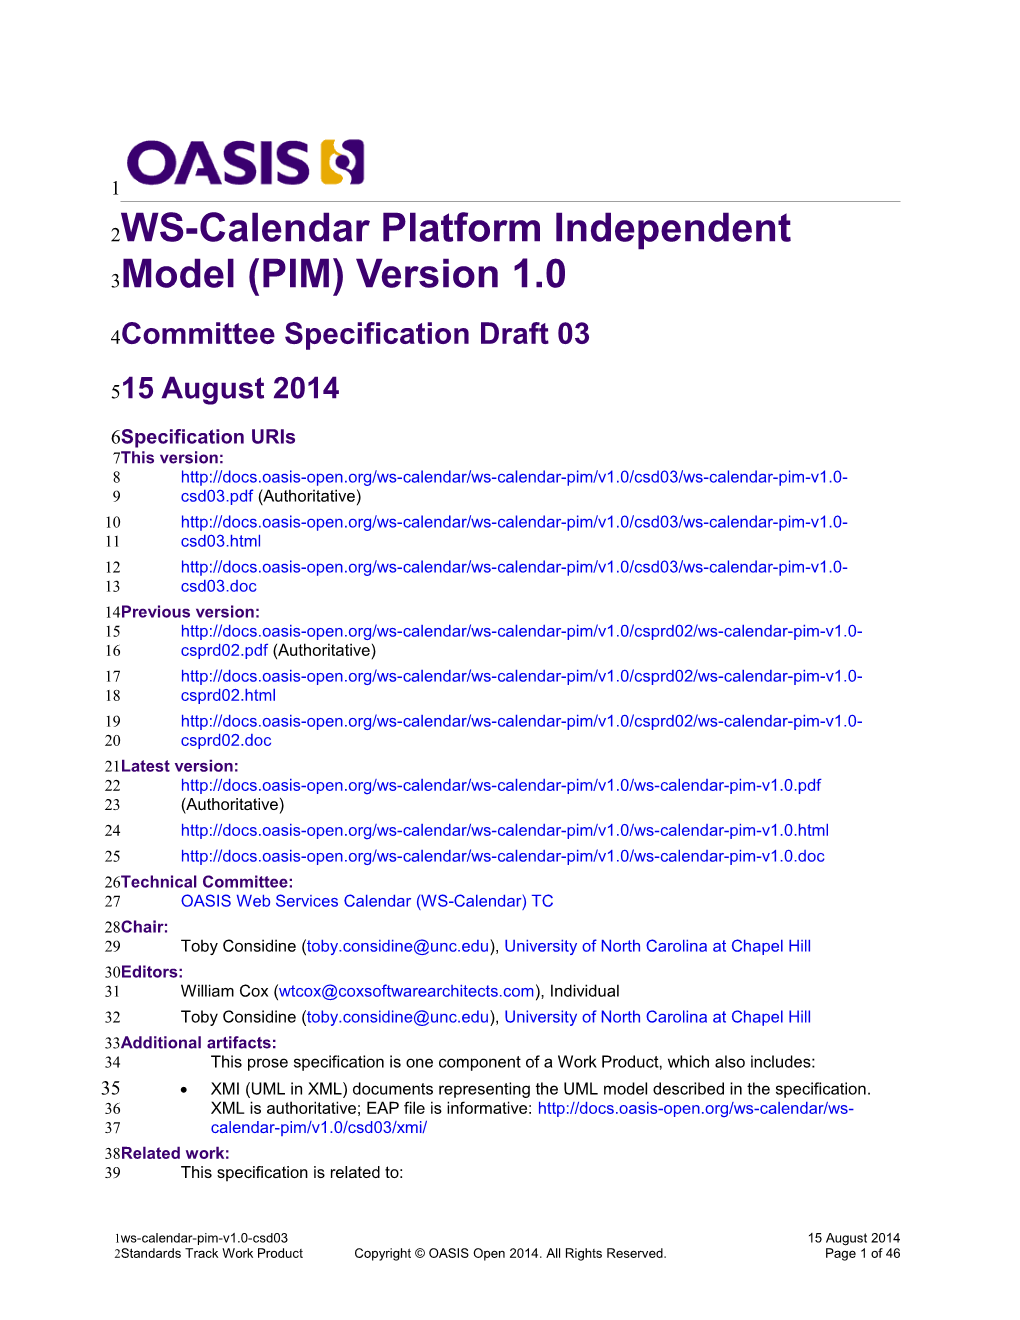 WS-Calendar Platform Independent Model (PIM) Version 1.0